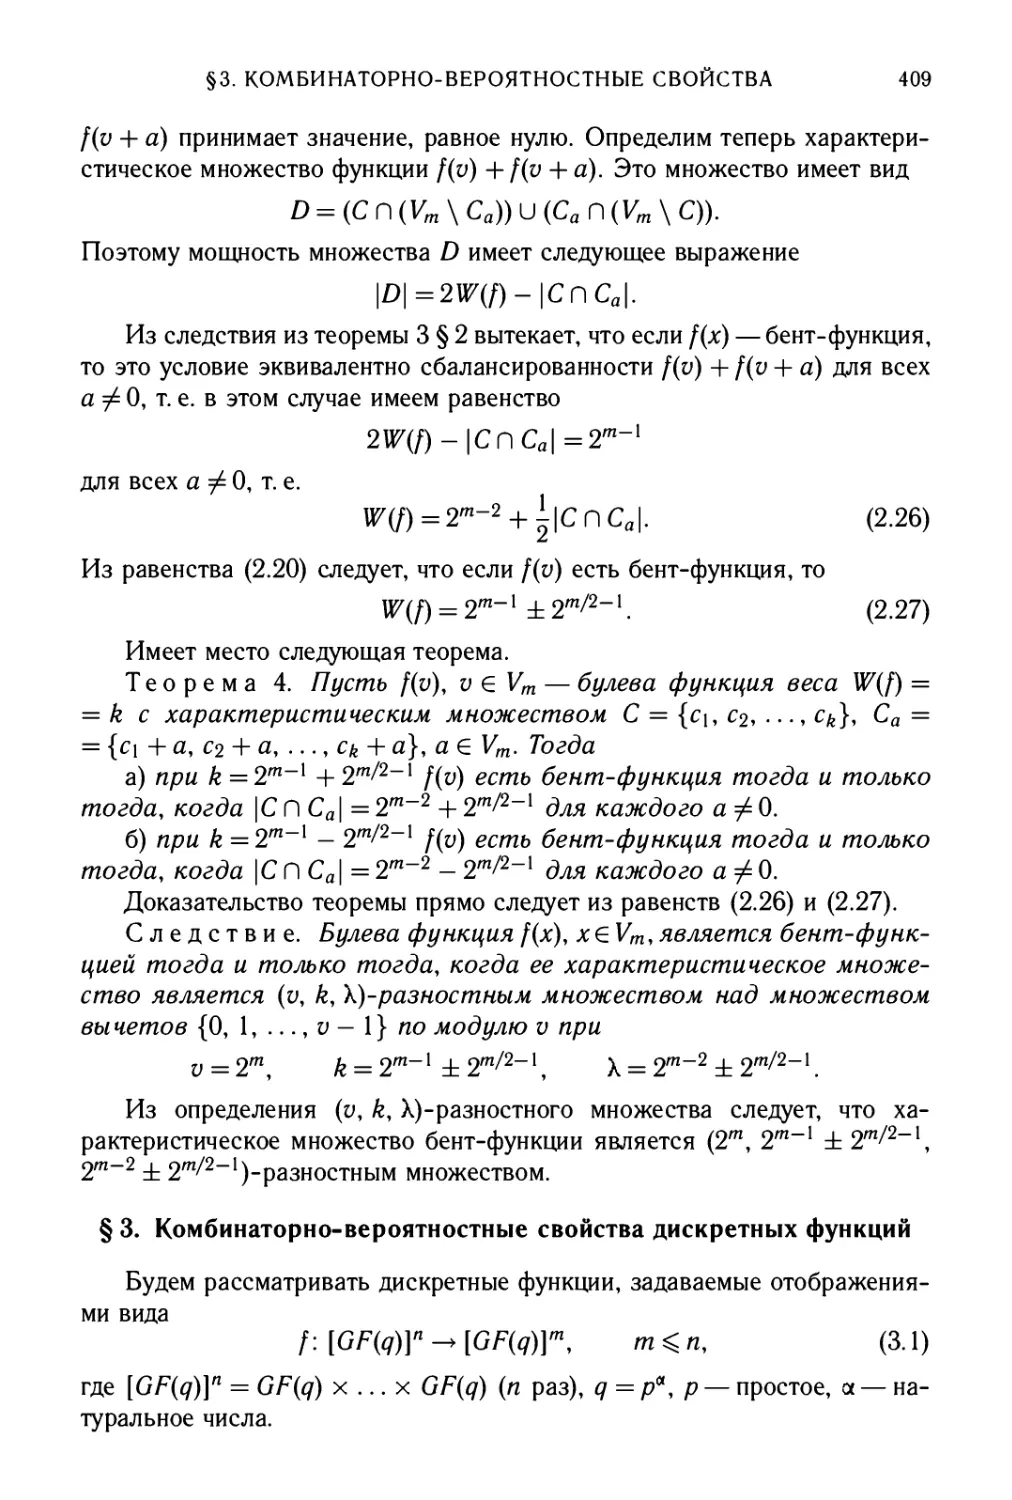 §3. Комбинаторно-вероятностные свойства дискретных функций